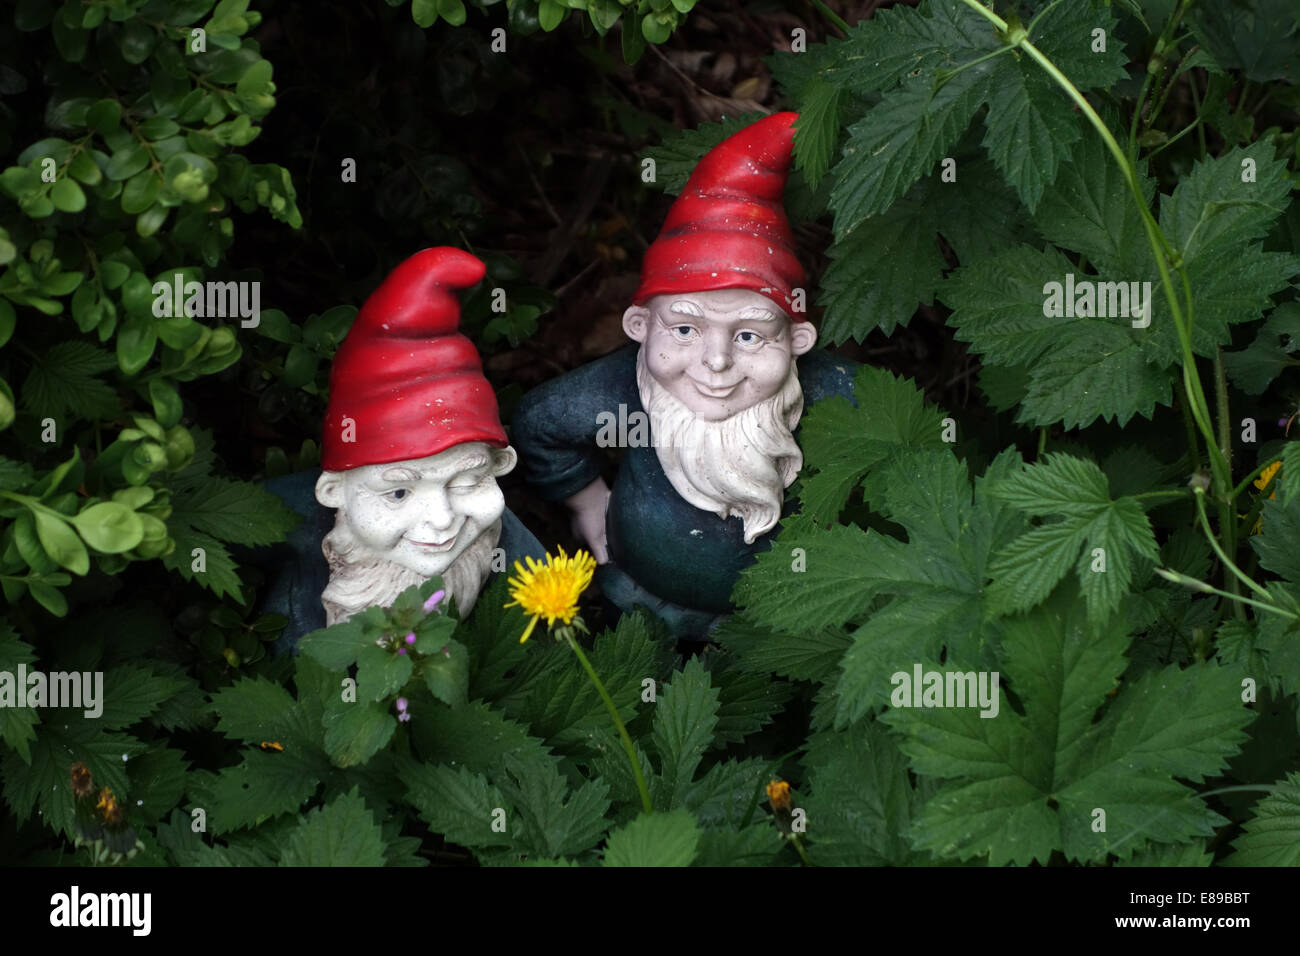 Berlin, Germany, garden dwarfs in a shrubbery Stock Photo